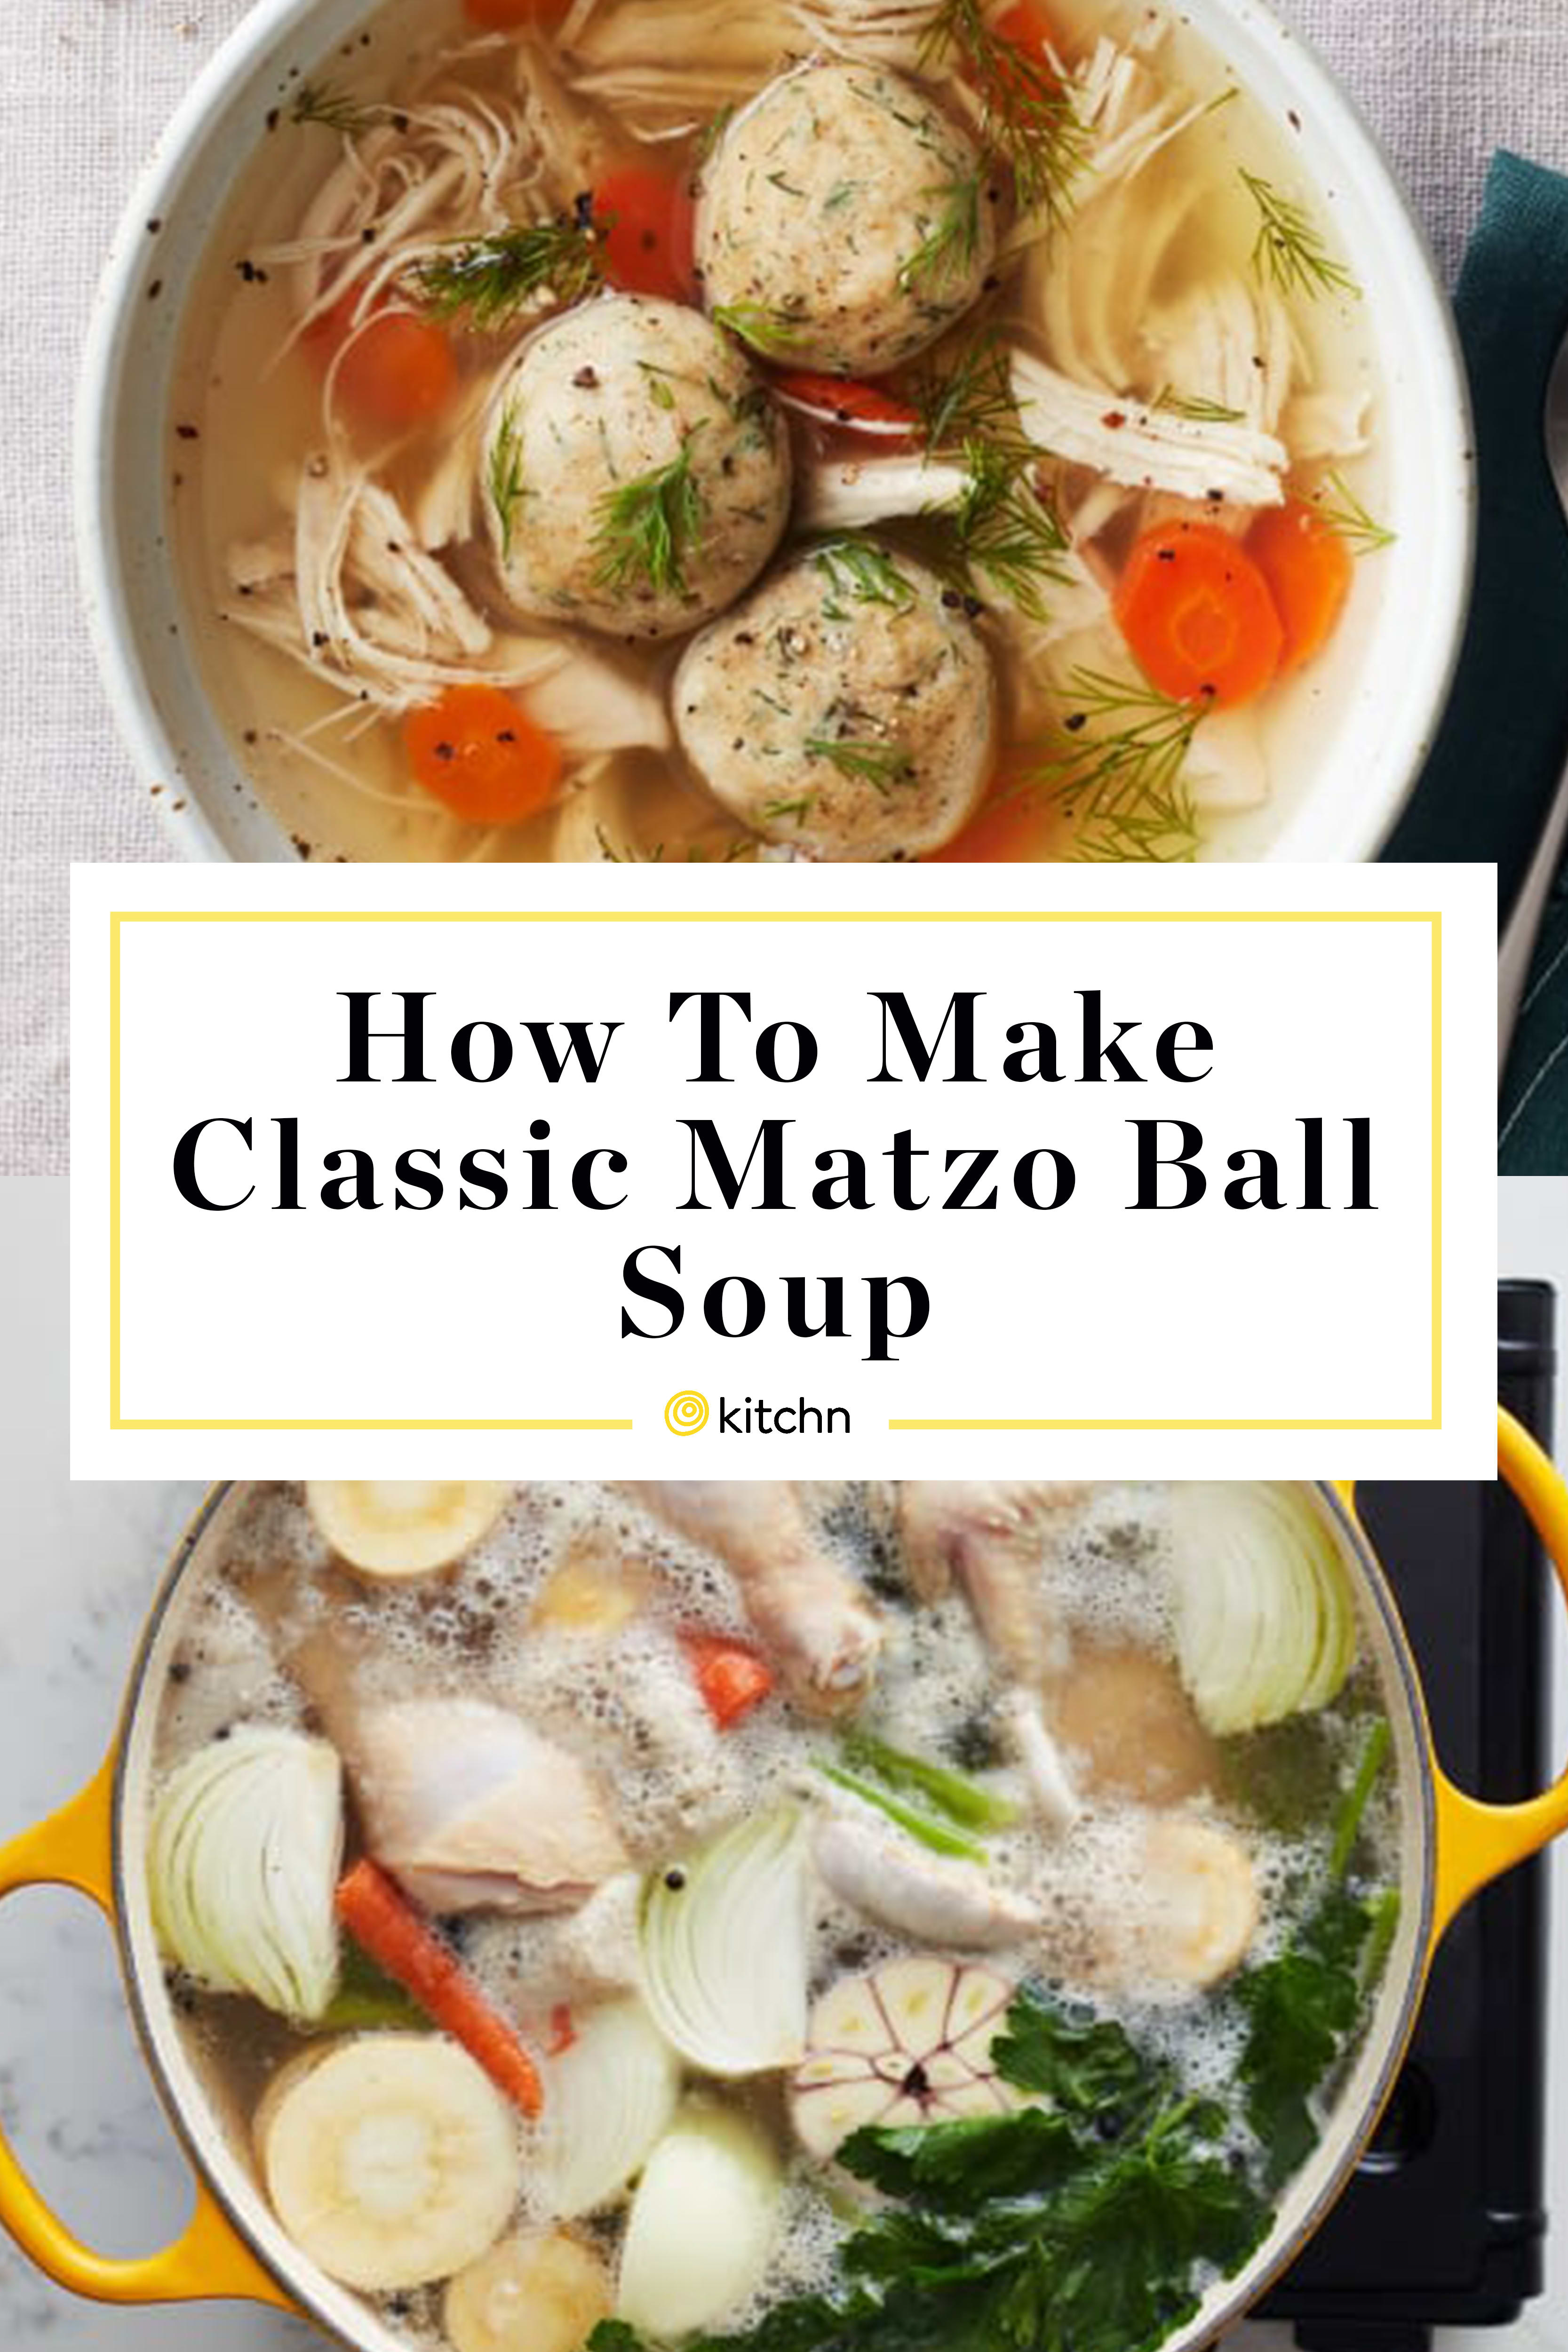 Classic Matzo Ball Soup